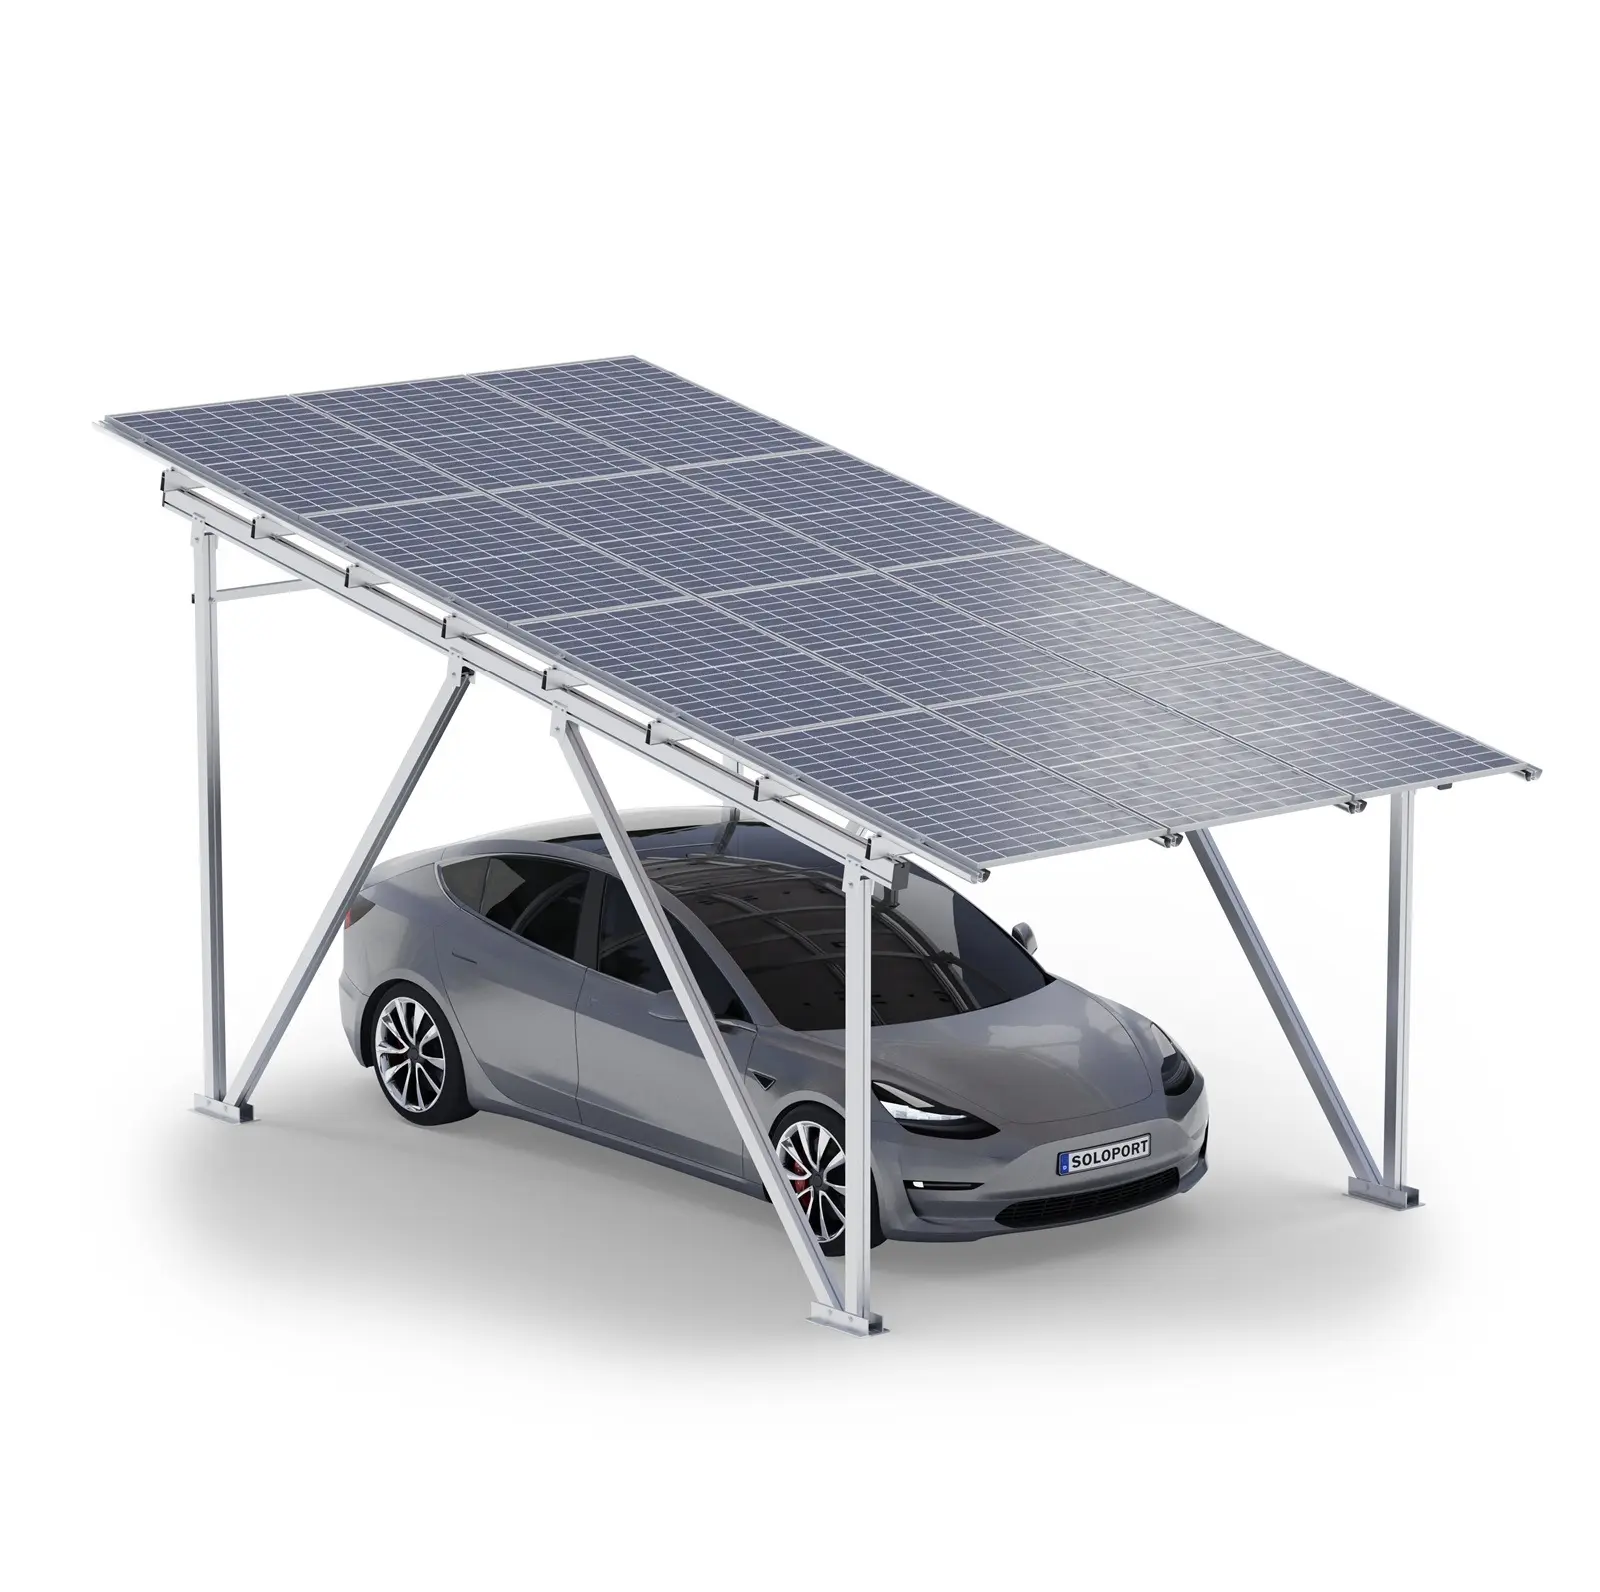 SoloportブランドSPG5アルミニウム構造ソーラーカーポートソーラーパネル付き電気自動車充電ステーション駐車場ポート